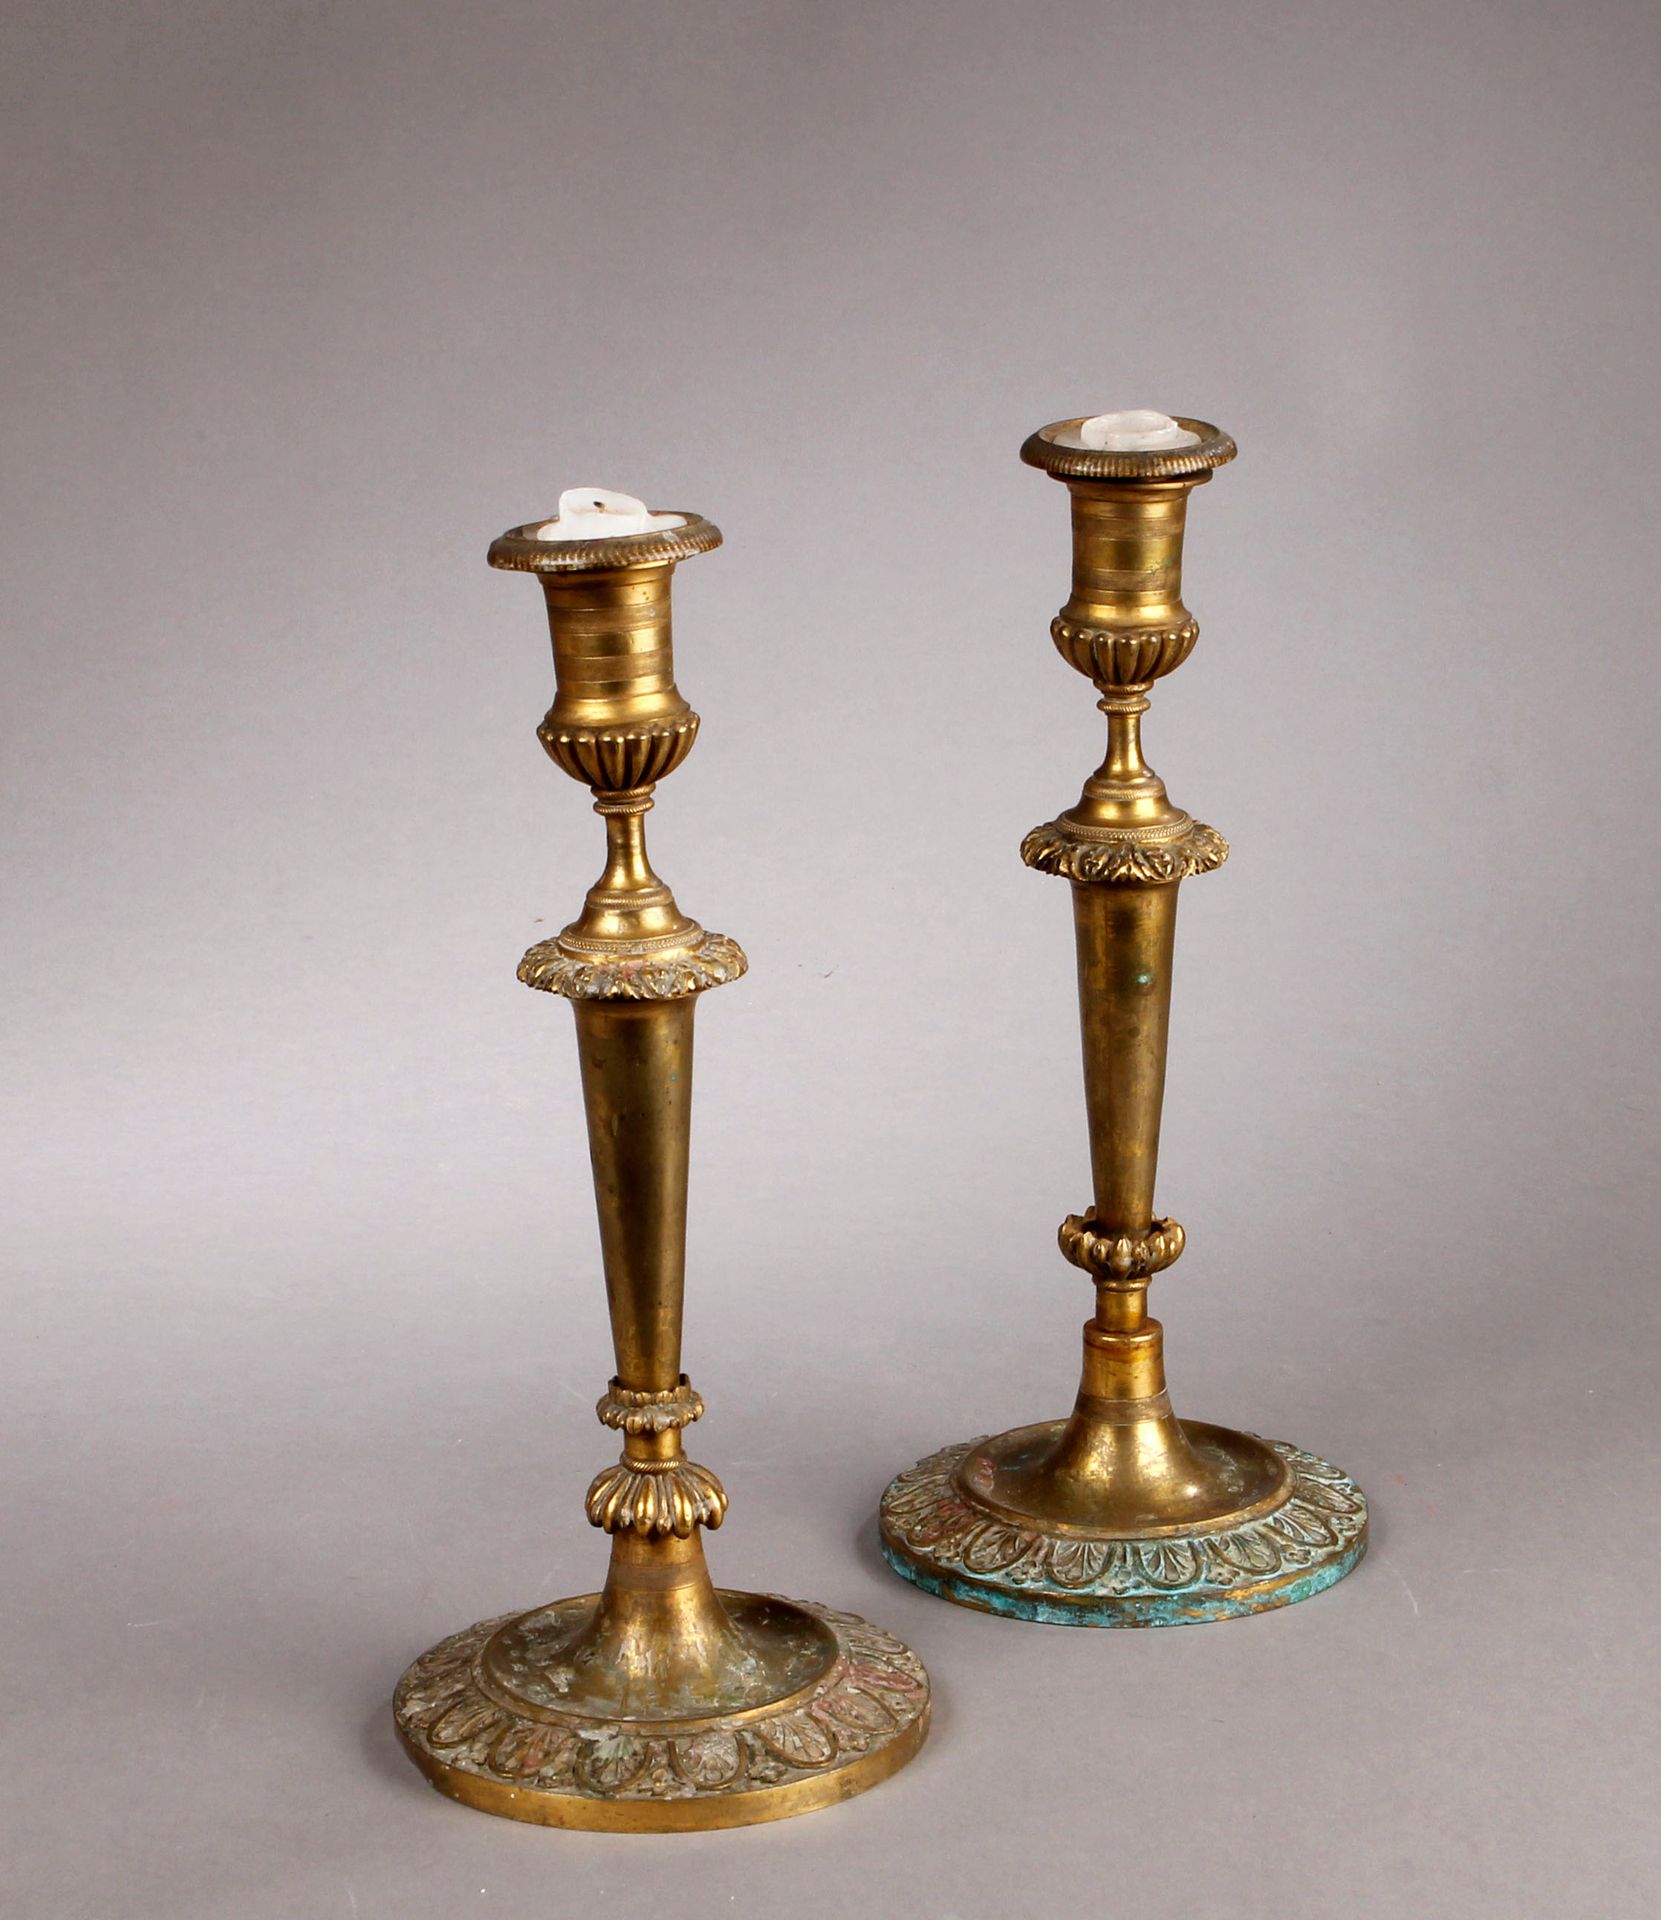 Null 一对青铜开瓶器，圆形底座上有掌纹，圆柱形的轴，有纹饰的把手。
19世纪。
H.29厘米